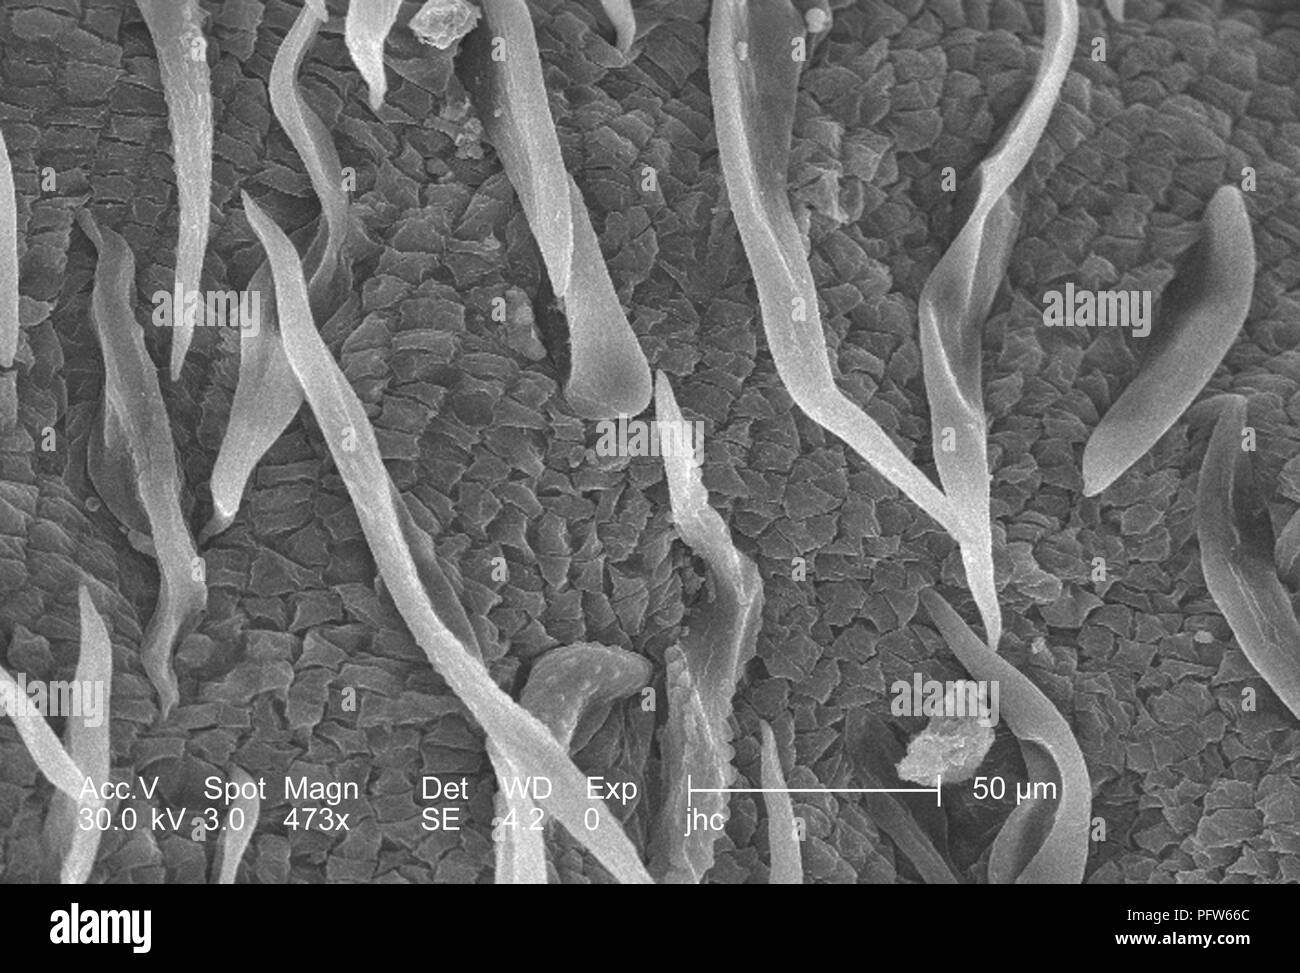 Morfologiche ultrastrutturali caratteristiche superficiali di un 'bract' da un sanguinello blossom (Cornus florida), ha rivelato nel 473x di scansione ingrandita al microscopio elettronico (SEM) immagine, 2006. Immagine cortesia di centri per il controllo delle malattie (CDC) / Janice Haney Carr. () Foto Stock